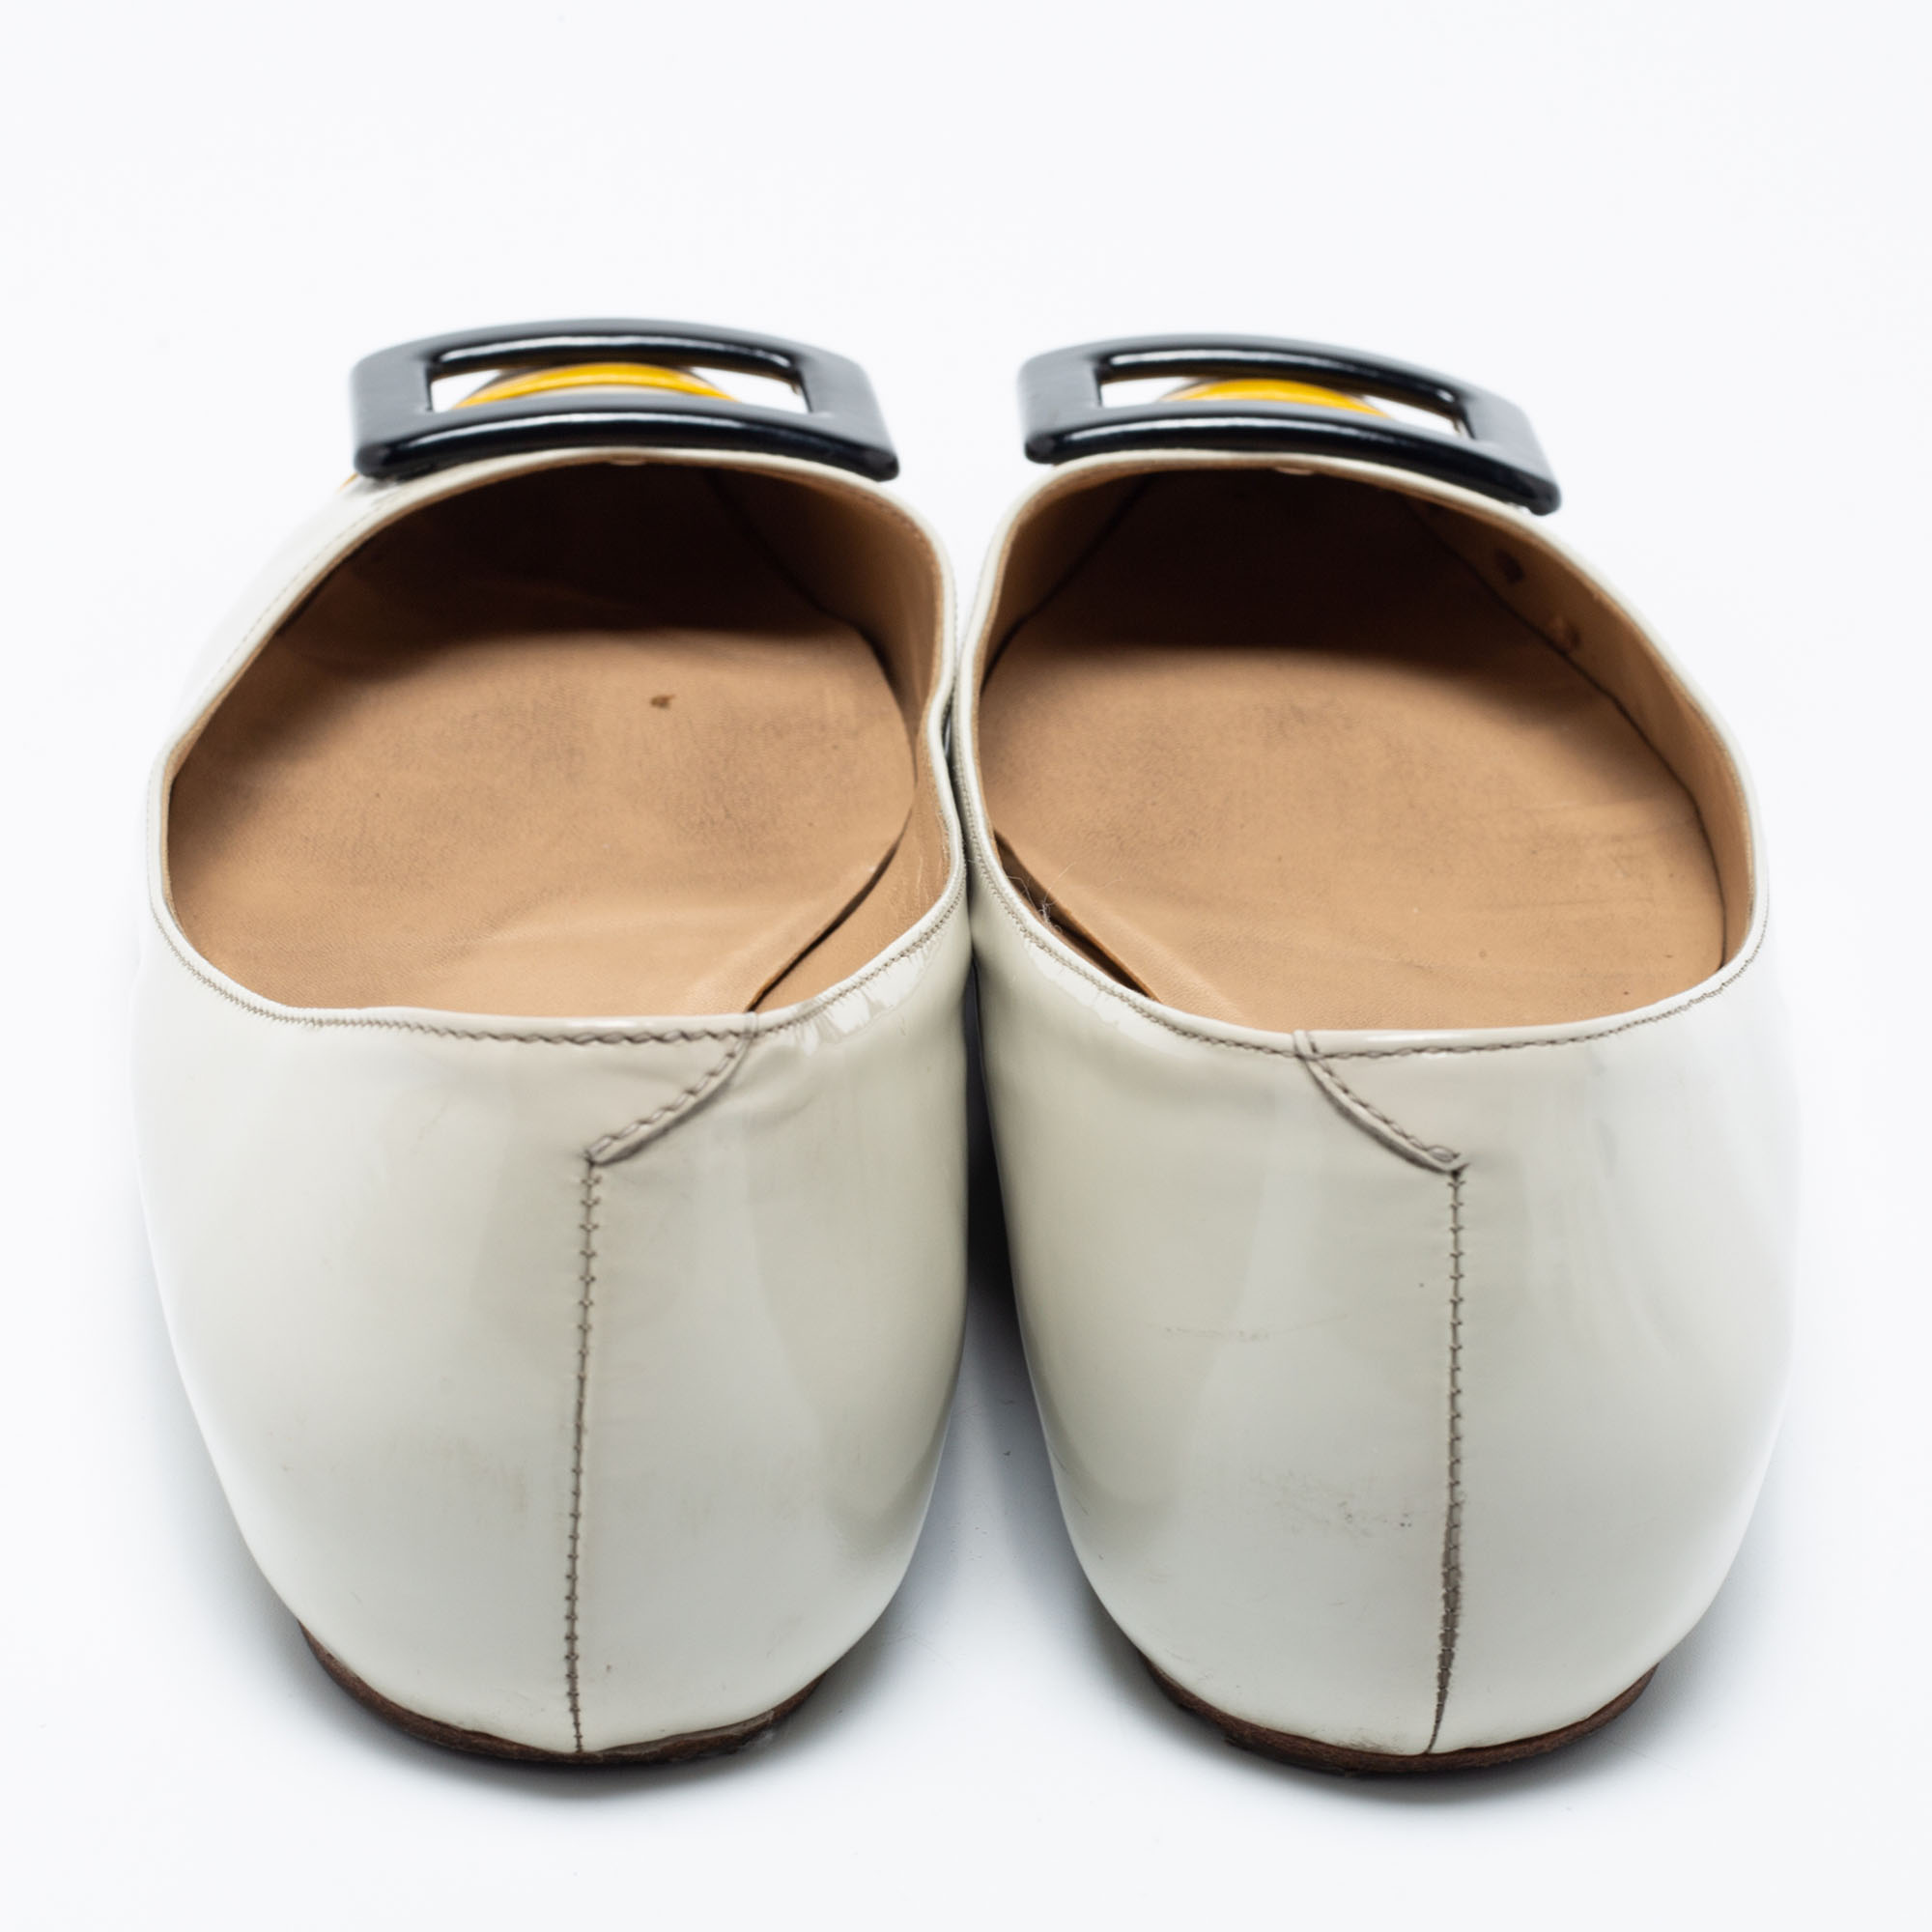 Roger Vivier Tri-Color Patent Leather Trompette Ballet Flats Size 36